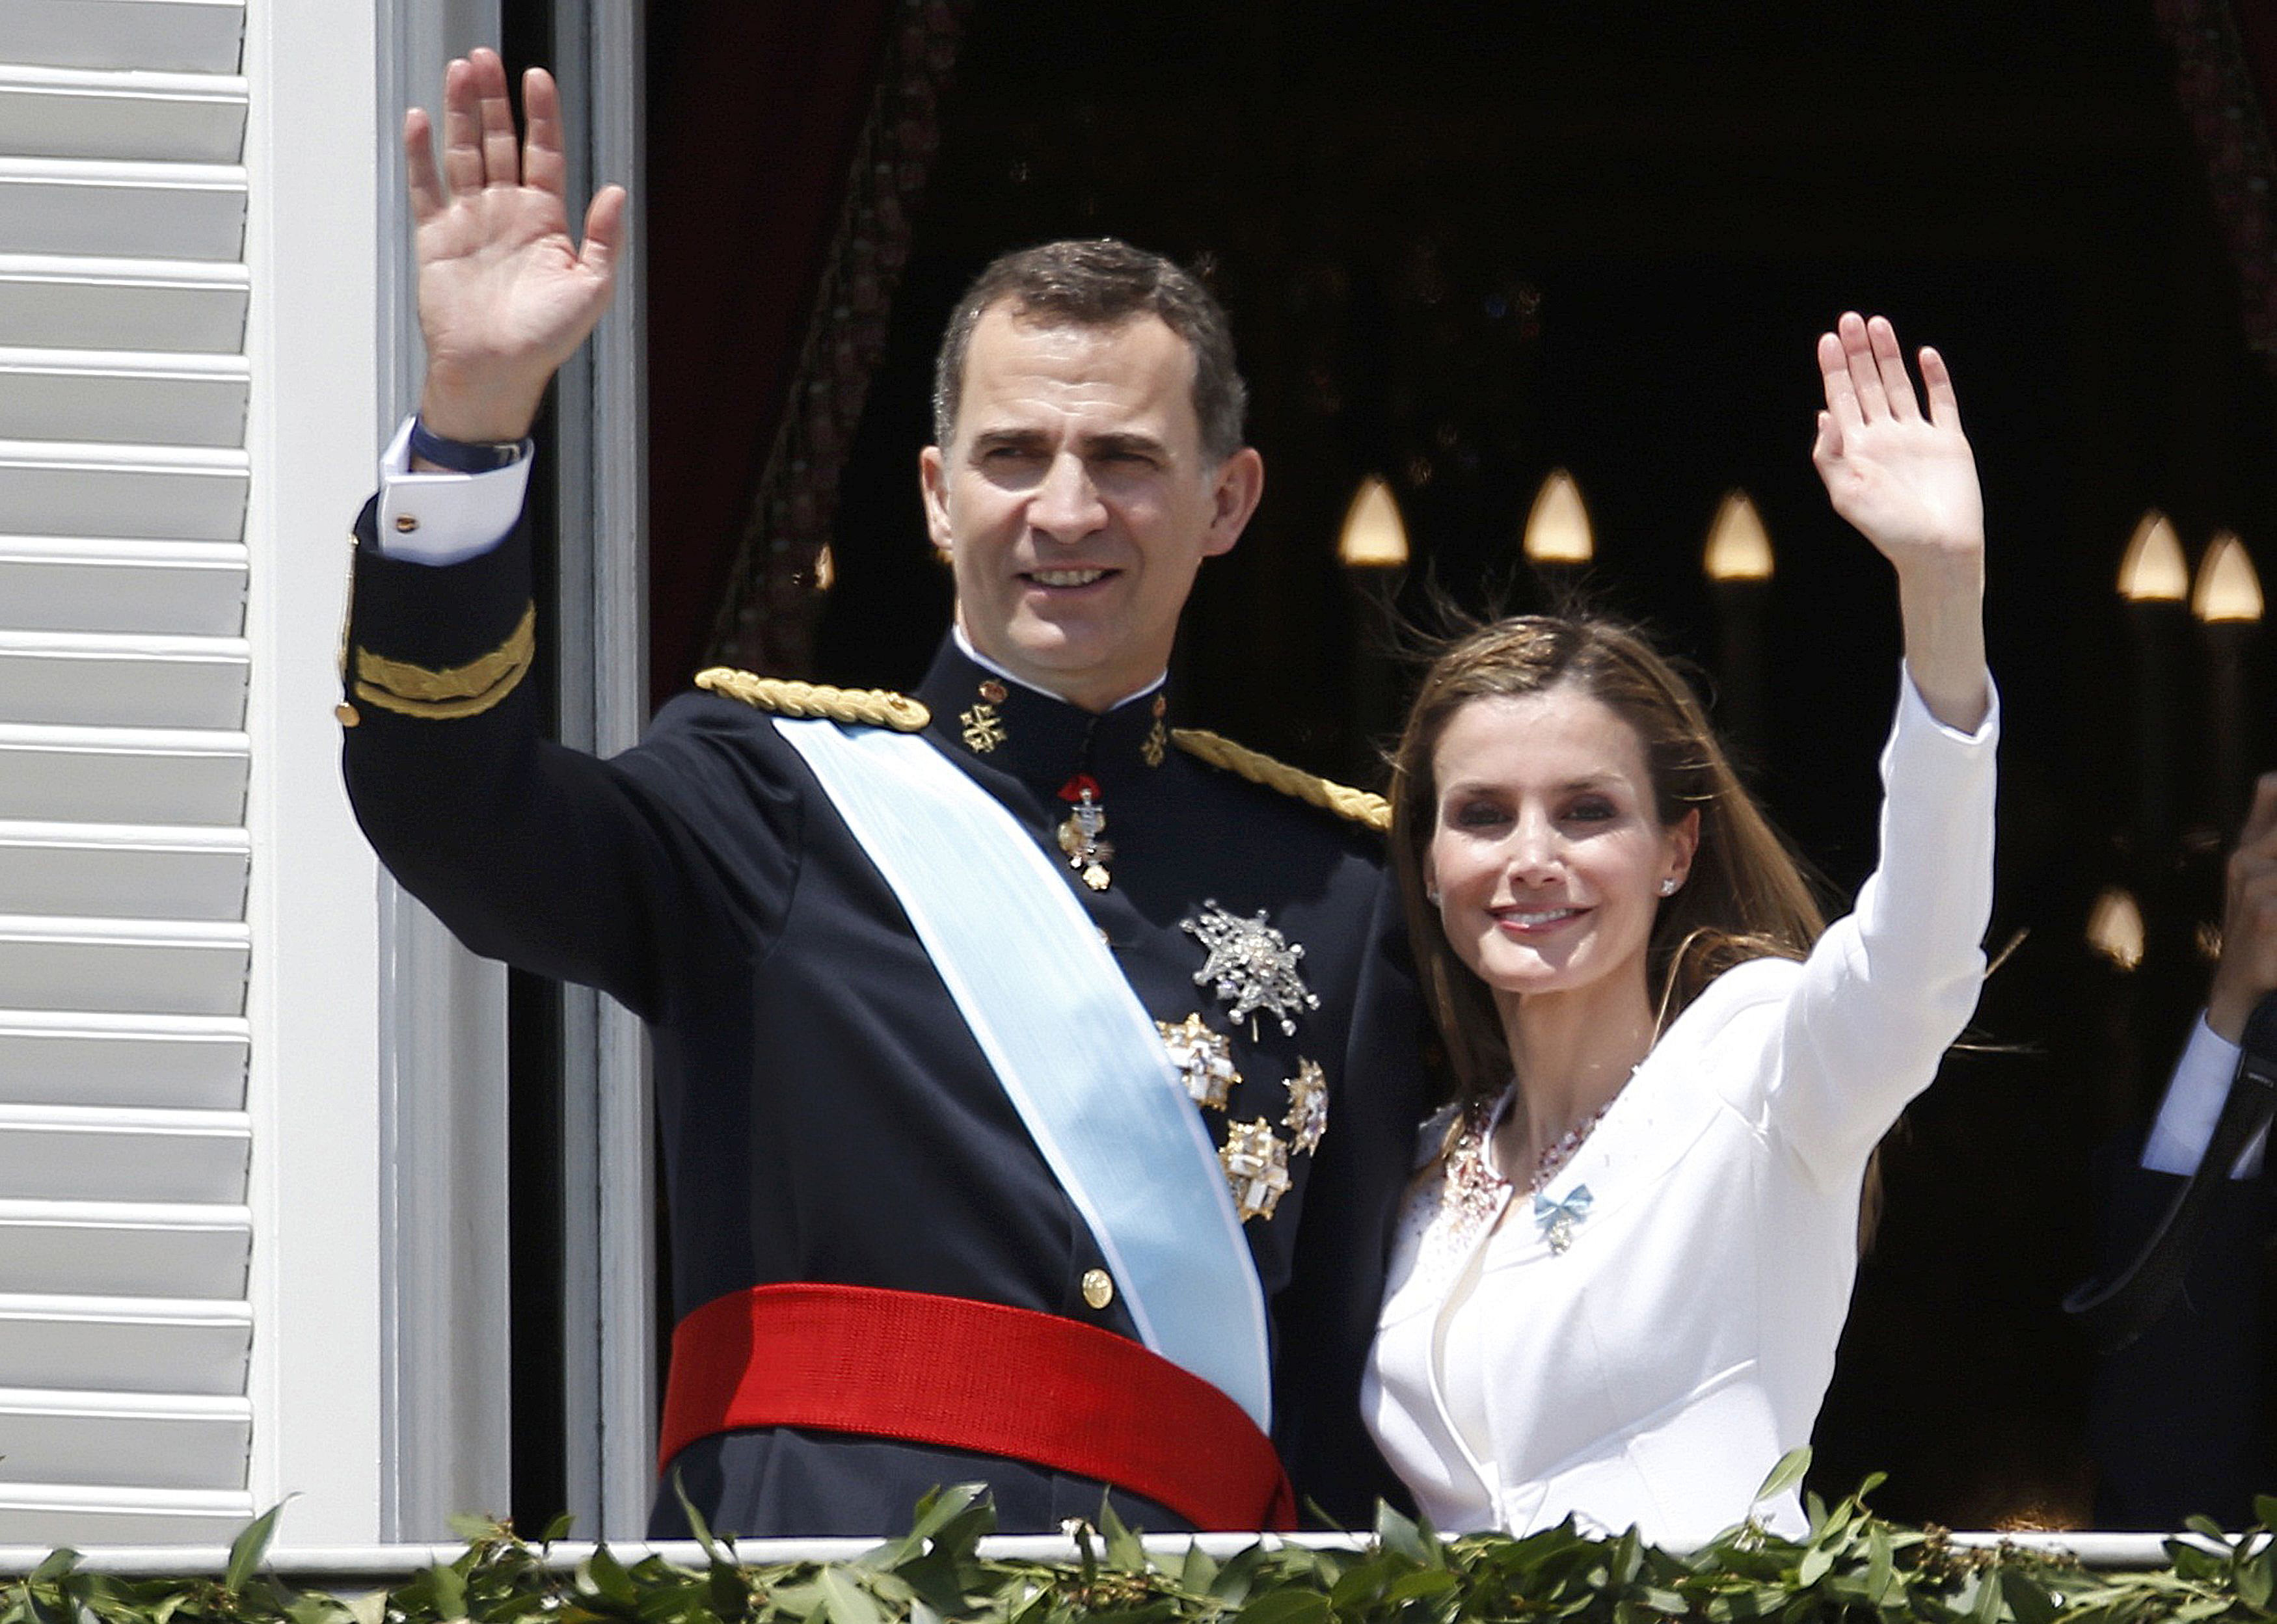 La primera visita oficial de los reyes de España será al papa Francisco